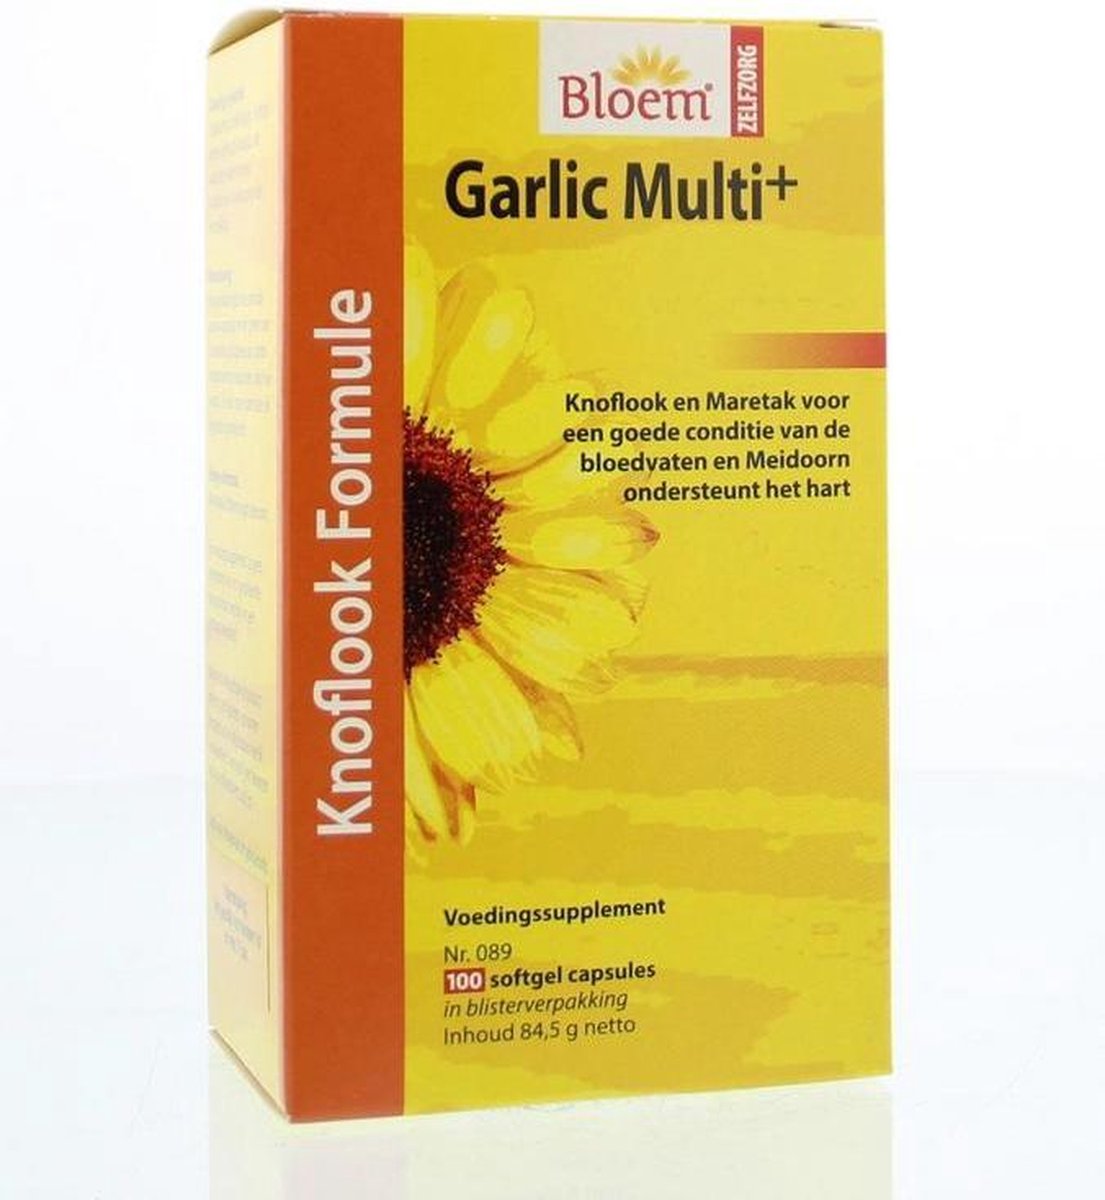 Bloem Garlic Multi+ - 100 capsules - Voedingssupplement - Bloem